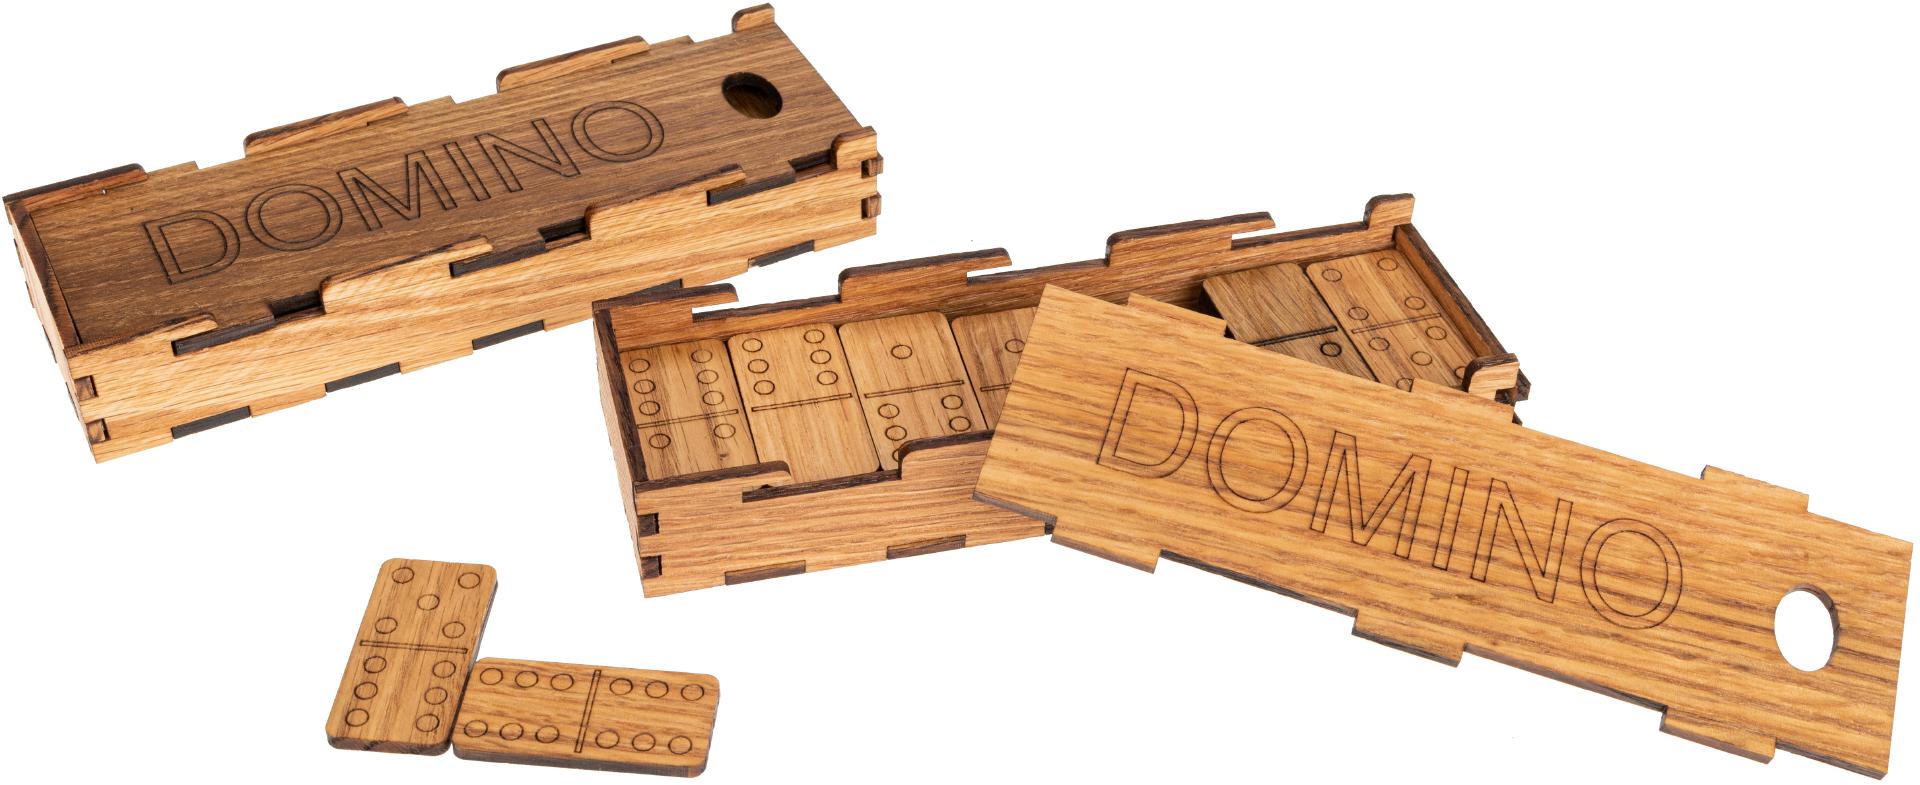 Domino Spiel aus geoelter Eiche Inklusive Spielsteinen im Holzkasten